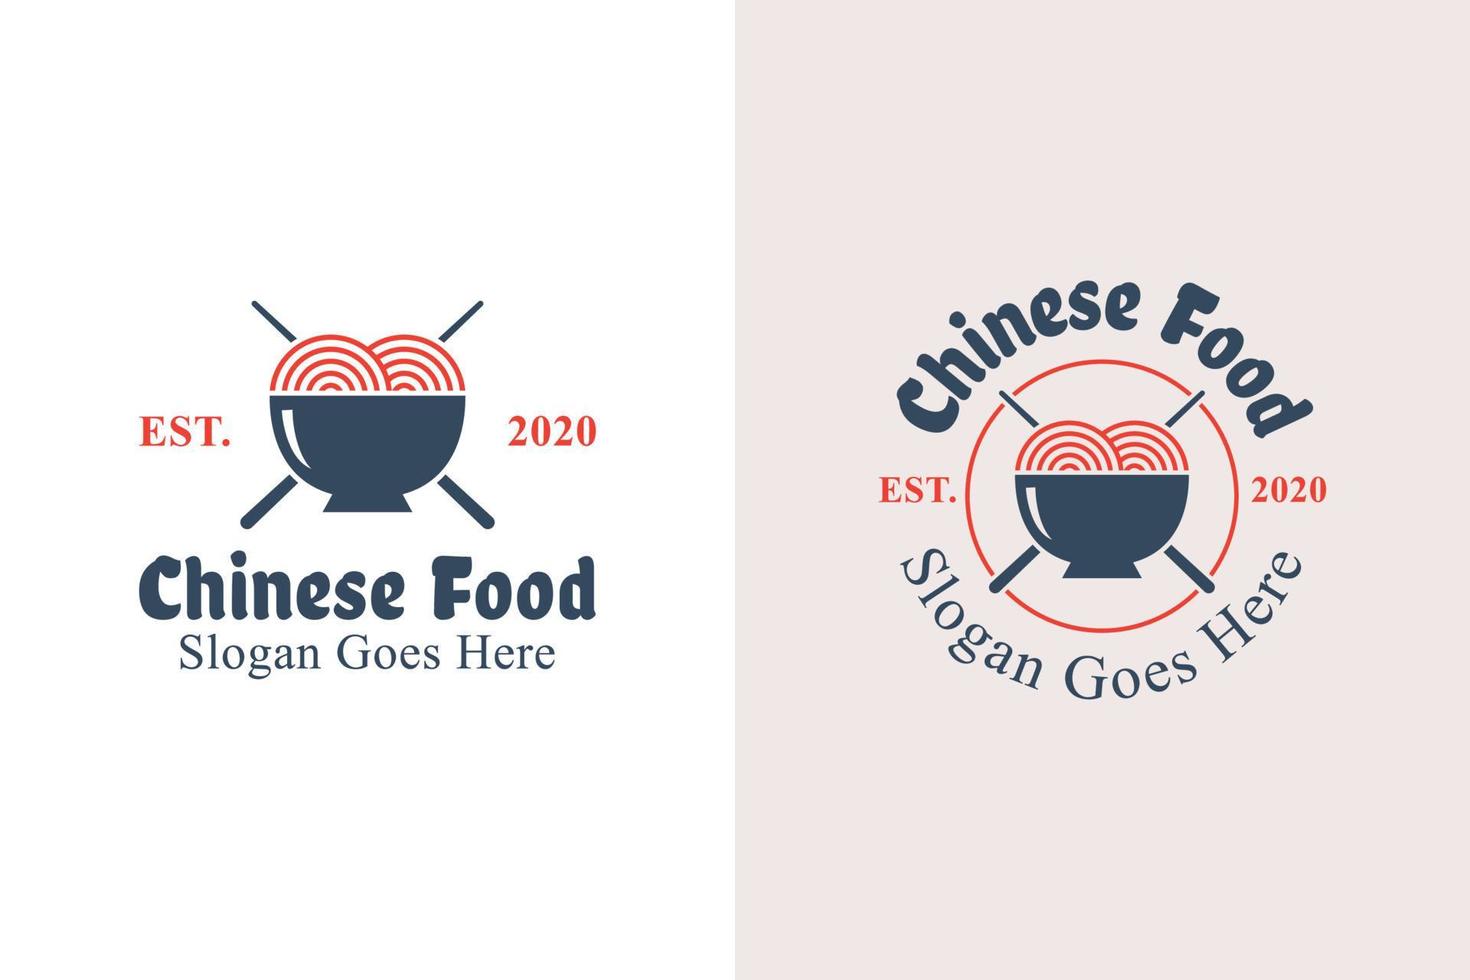 design de logotipo de comida chinesa retrô vintage. logotipo de macarrão e mie ramen com duas versões vetor